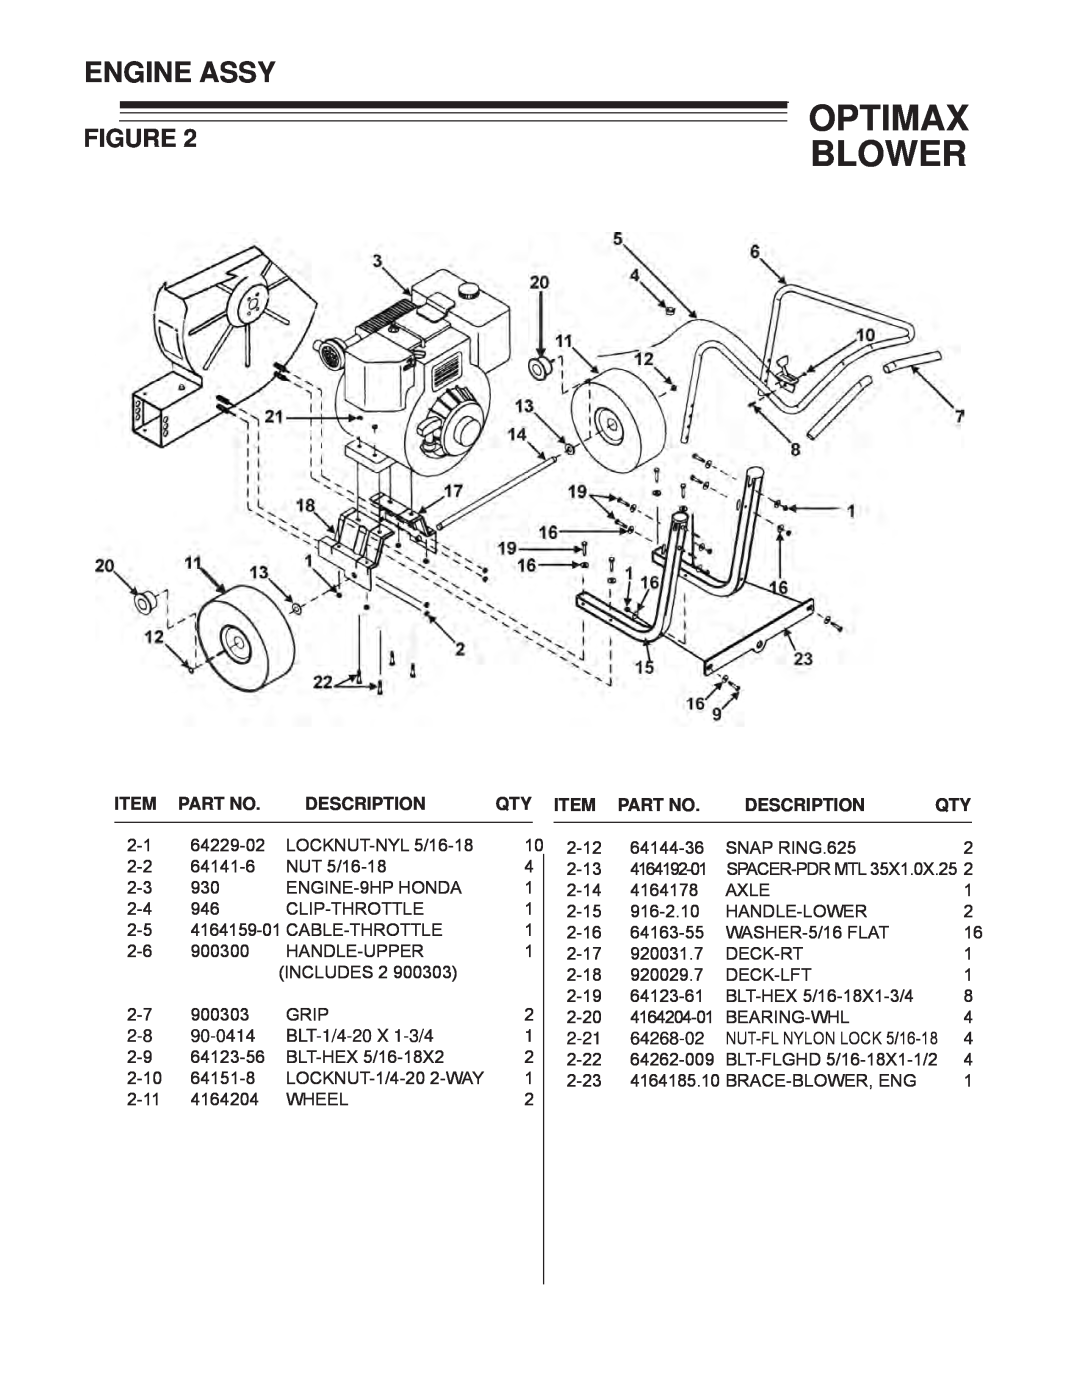 Little Wonder LB900-00-01 technical manual Engine Assy, Optimax Blower, Description, Qty Item Part No 